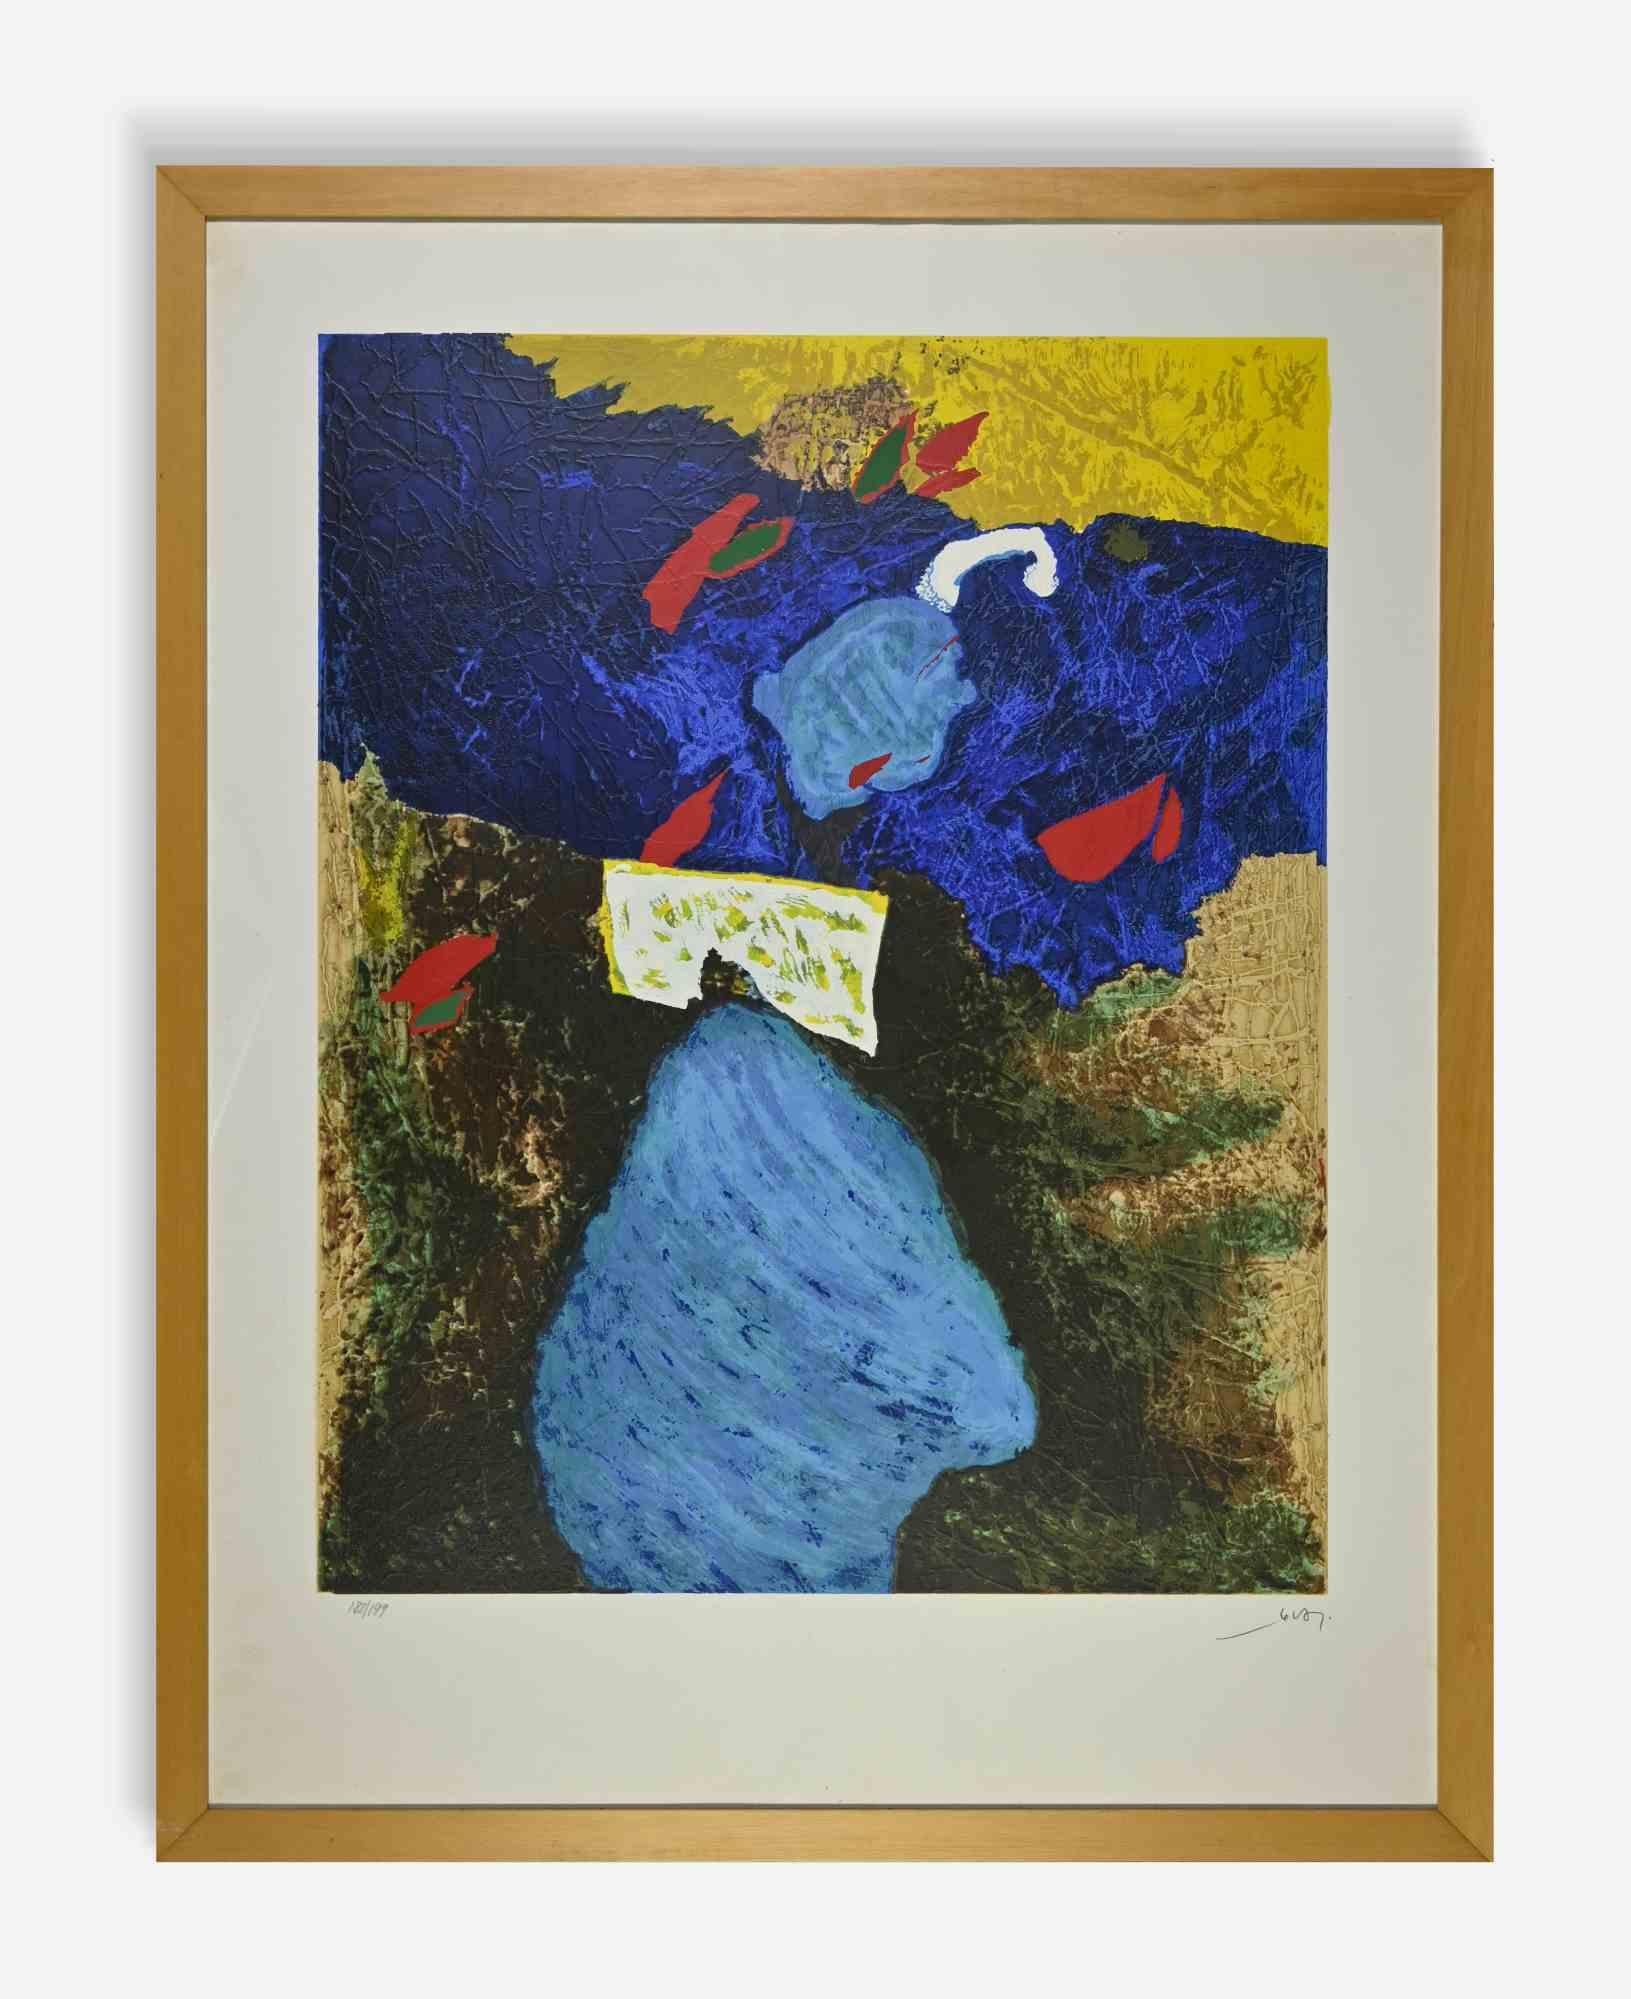 L'abstraction colorée est une œuvre réalisée par Giovanni Dova dans les années 1970. 

Sérigraphie sur papier, 90 x 70 cm avec cadre.

Édition 182/199.

Signé à la main en bas à droite.



Né à Rome le 8 janvier 1925 d'Edmondo Dova, romain